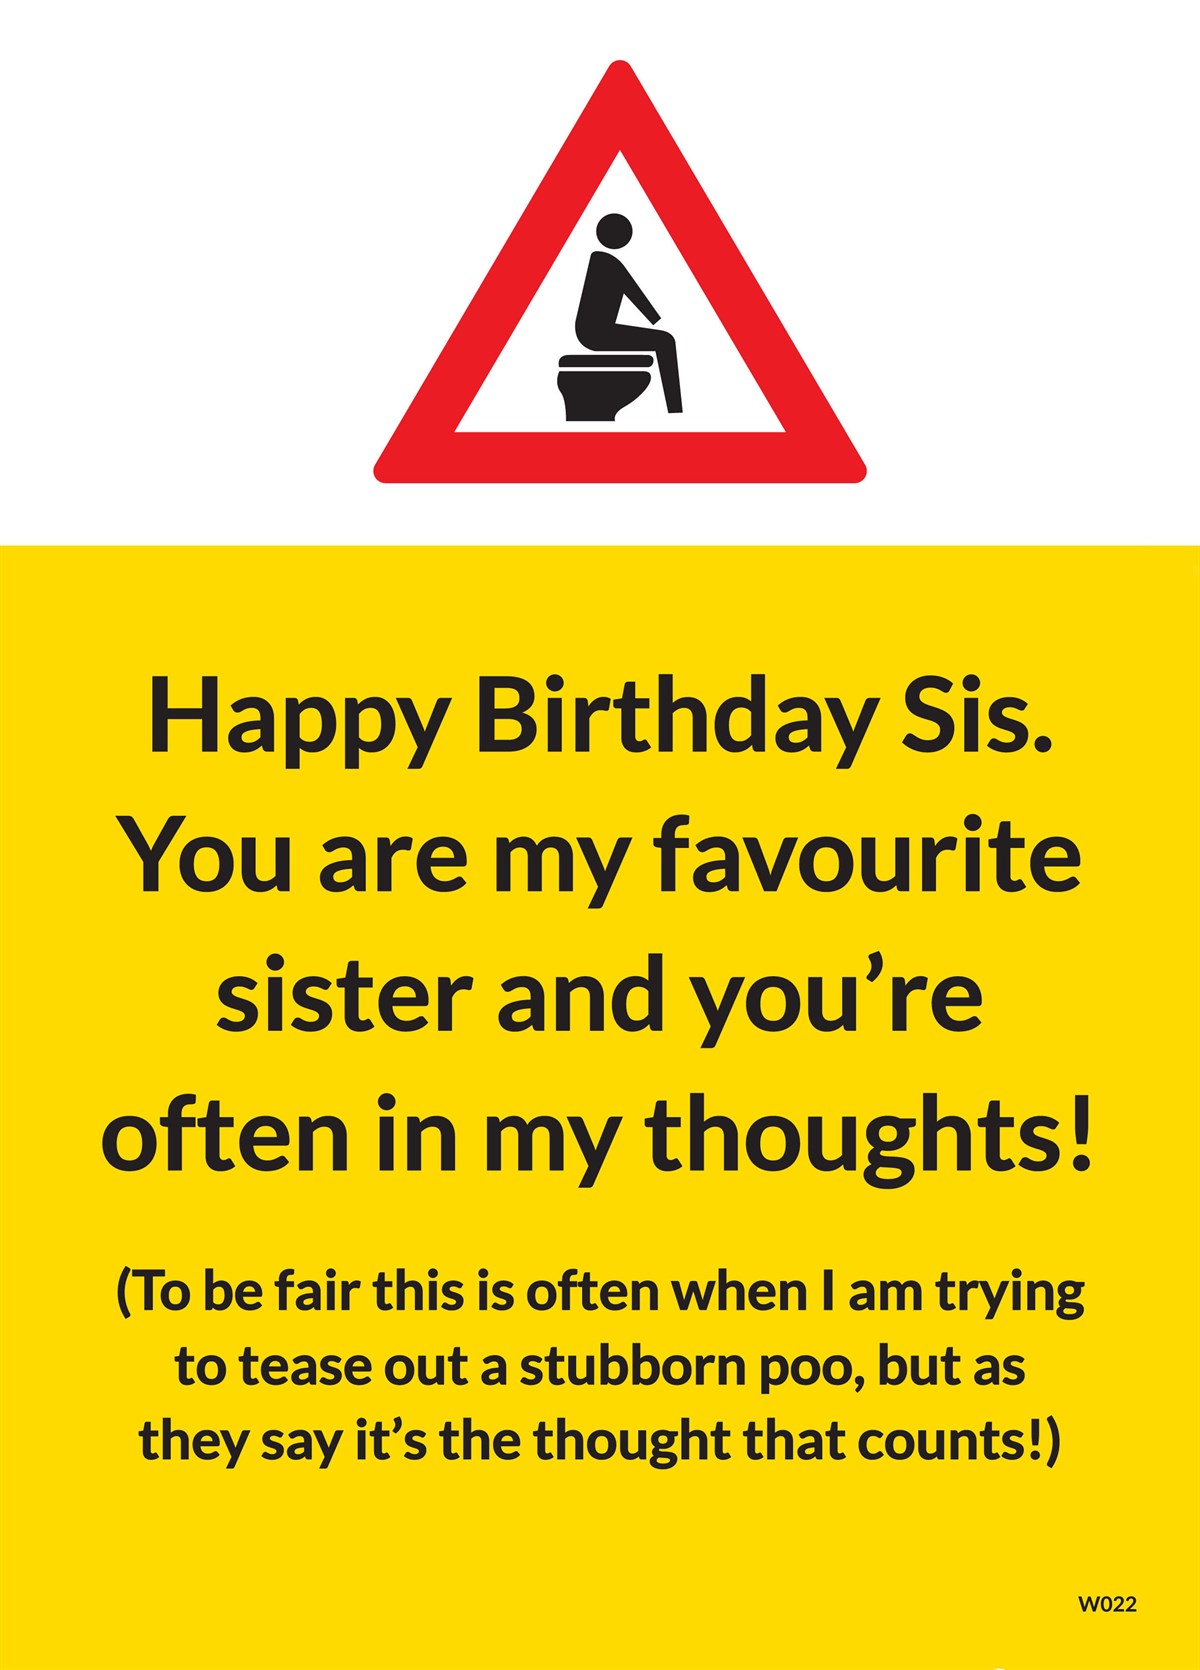 Funny Stubborn Poo Joke Birthday Customised Card 